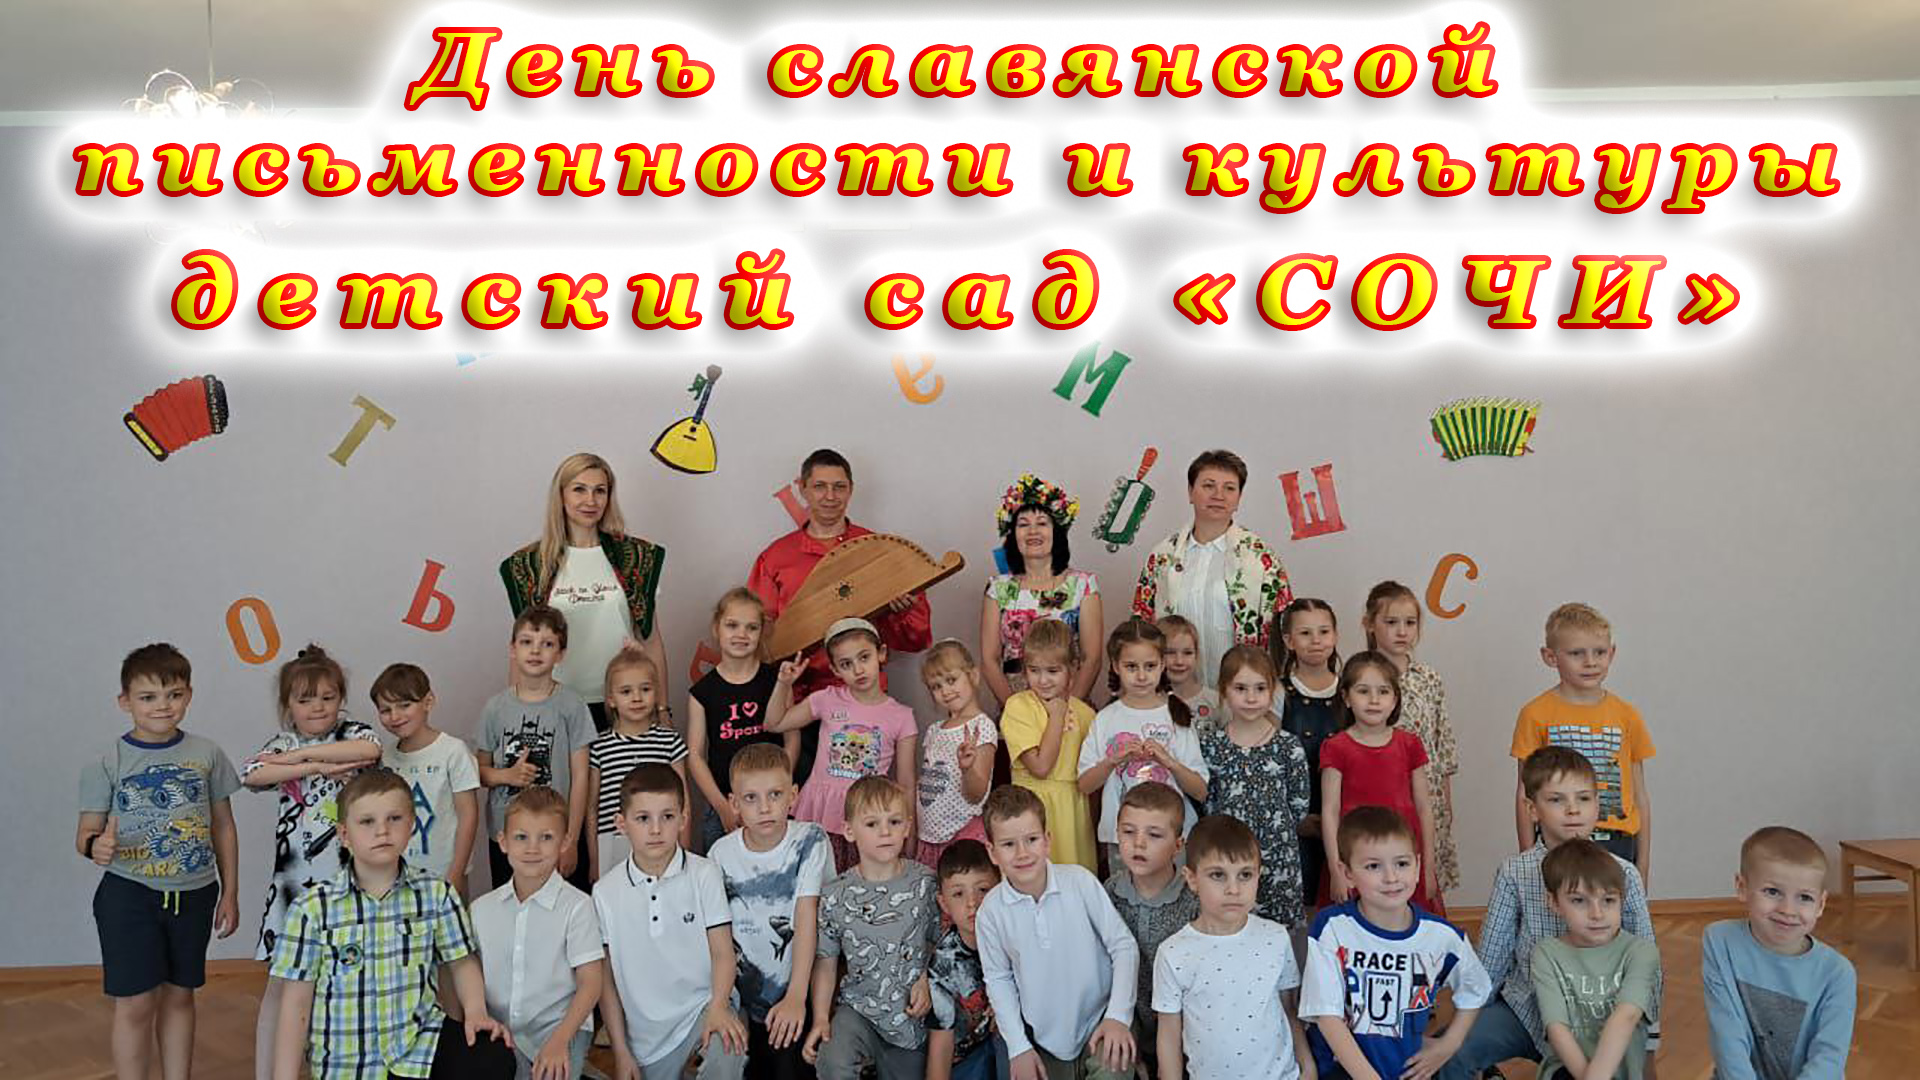 День славянской письменности и культуры в детском саду «Сочи».